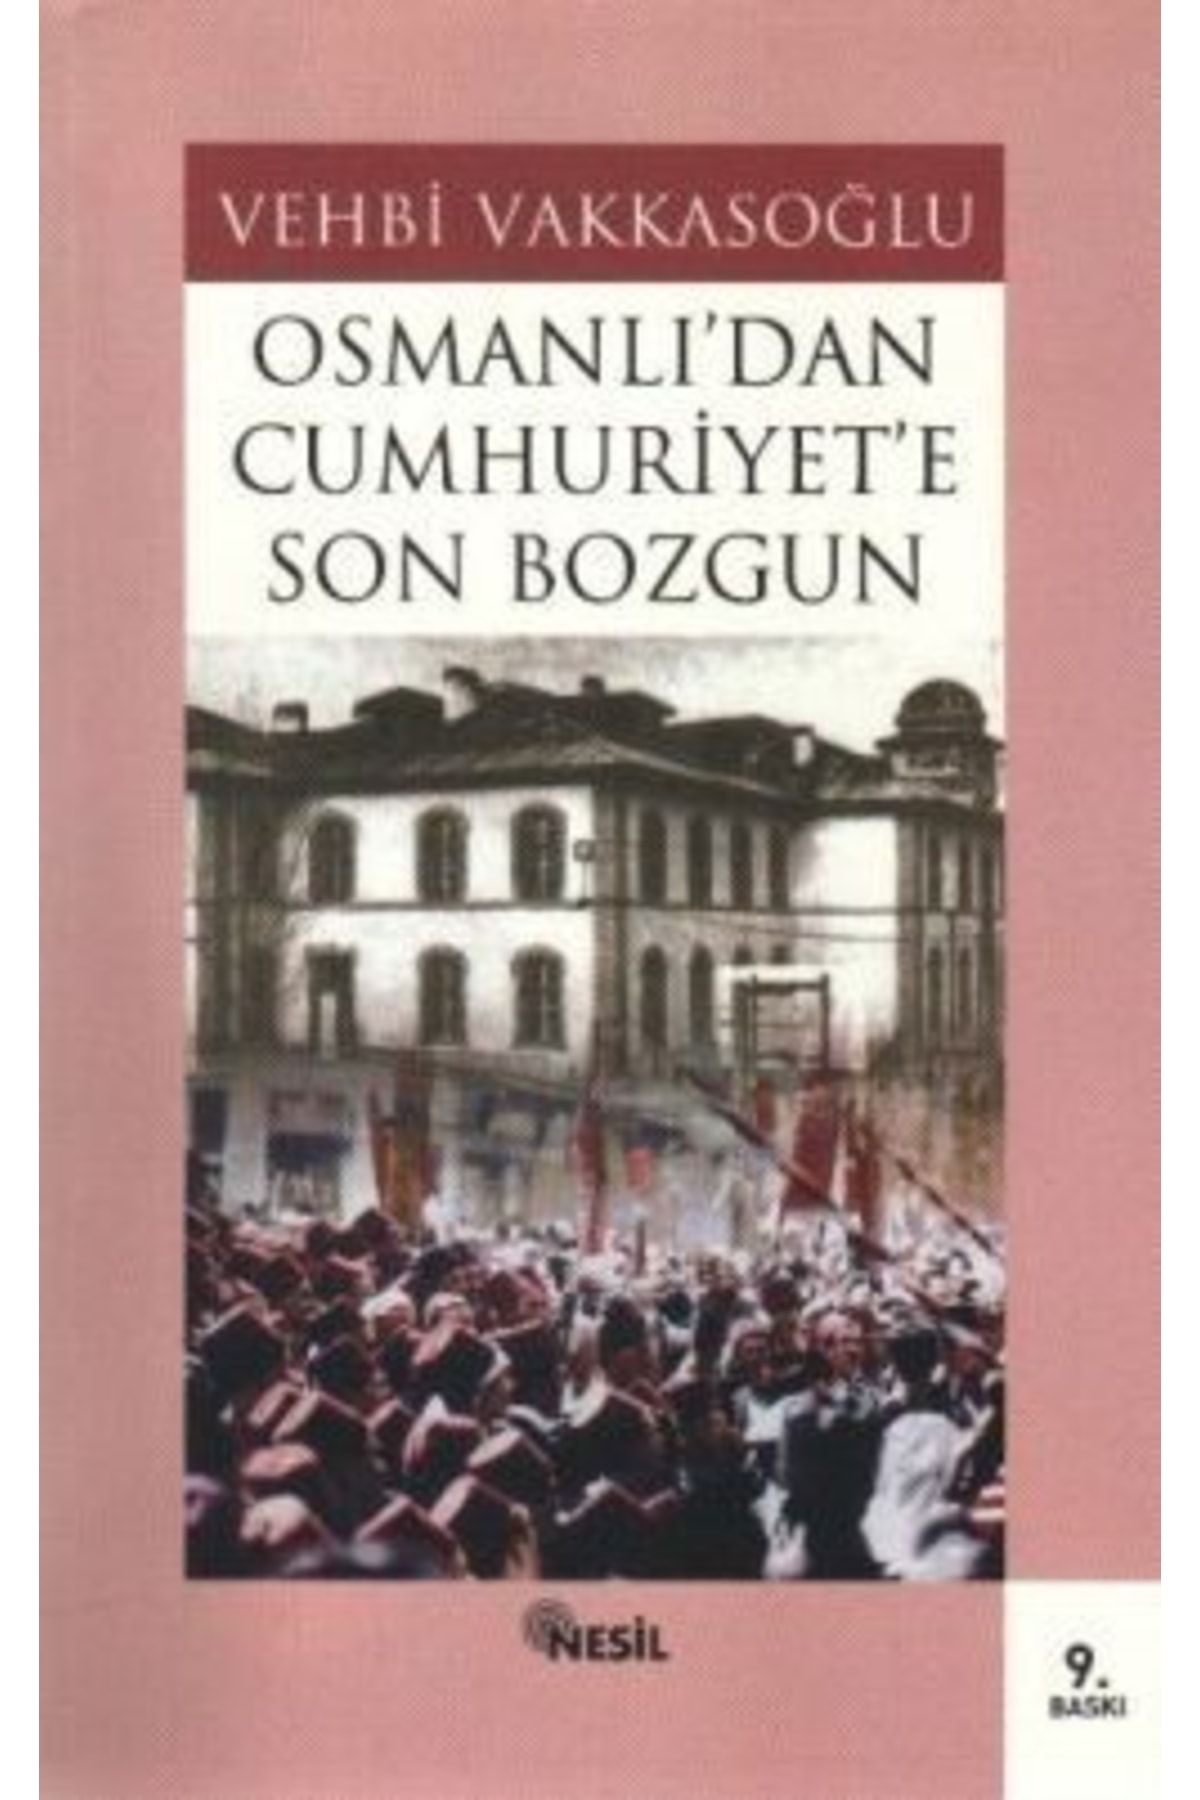 Nesil Yayınları Osmanlı’dan Cumhuriyet’e Son Bozgun - - Vehbi Vakkasoğlu Kitabı